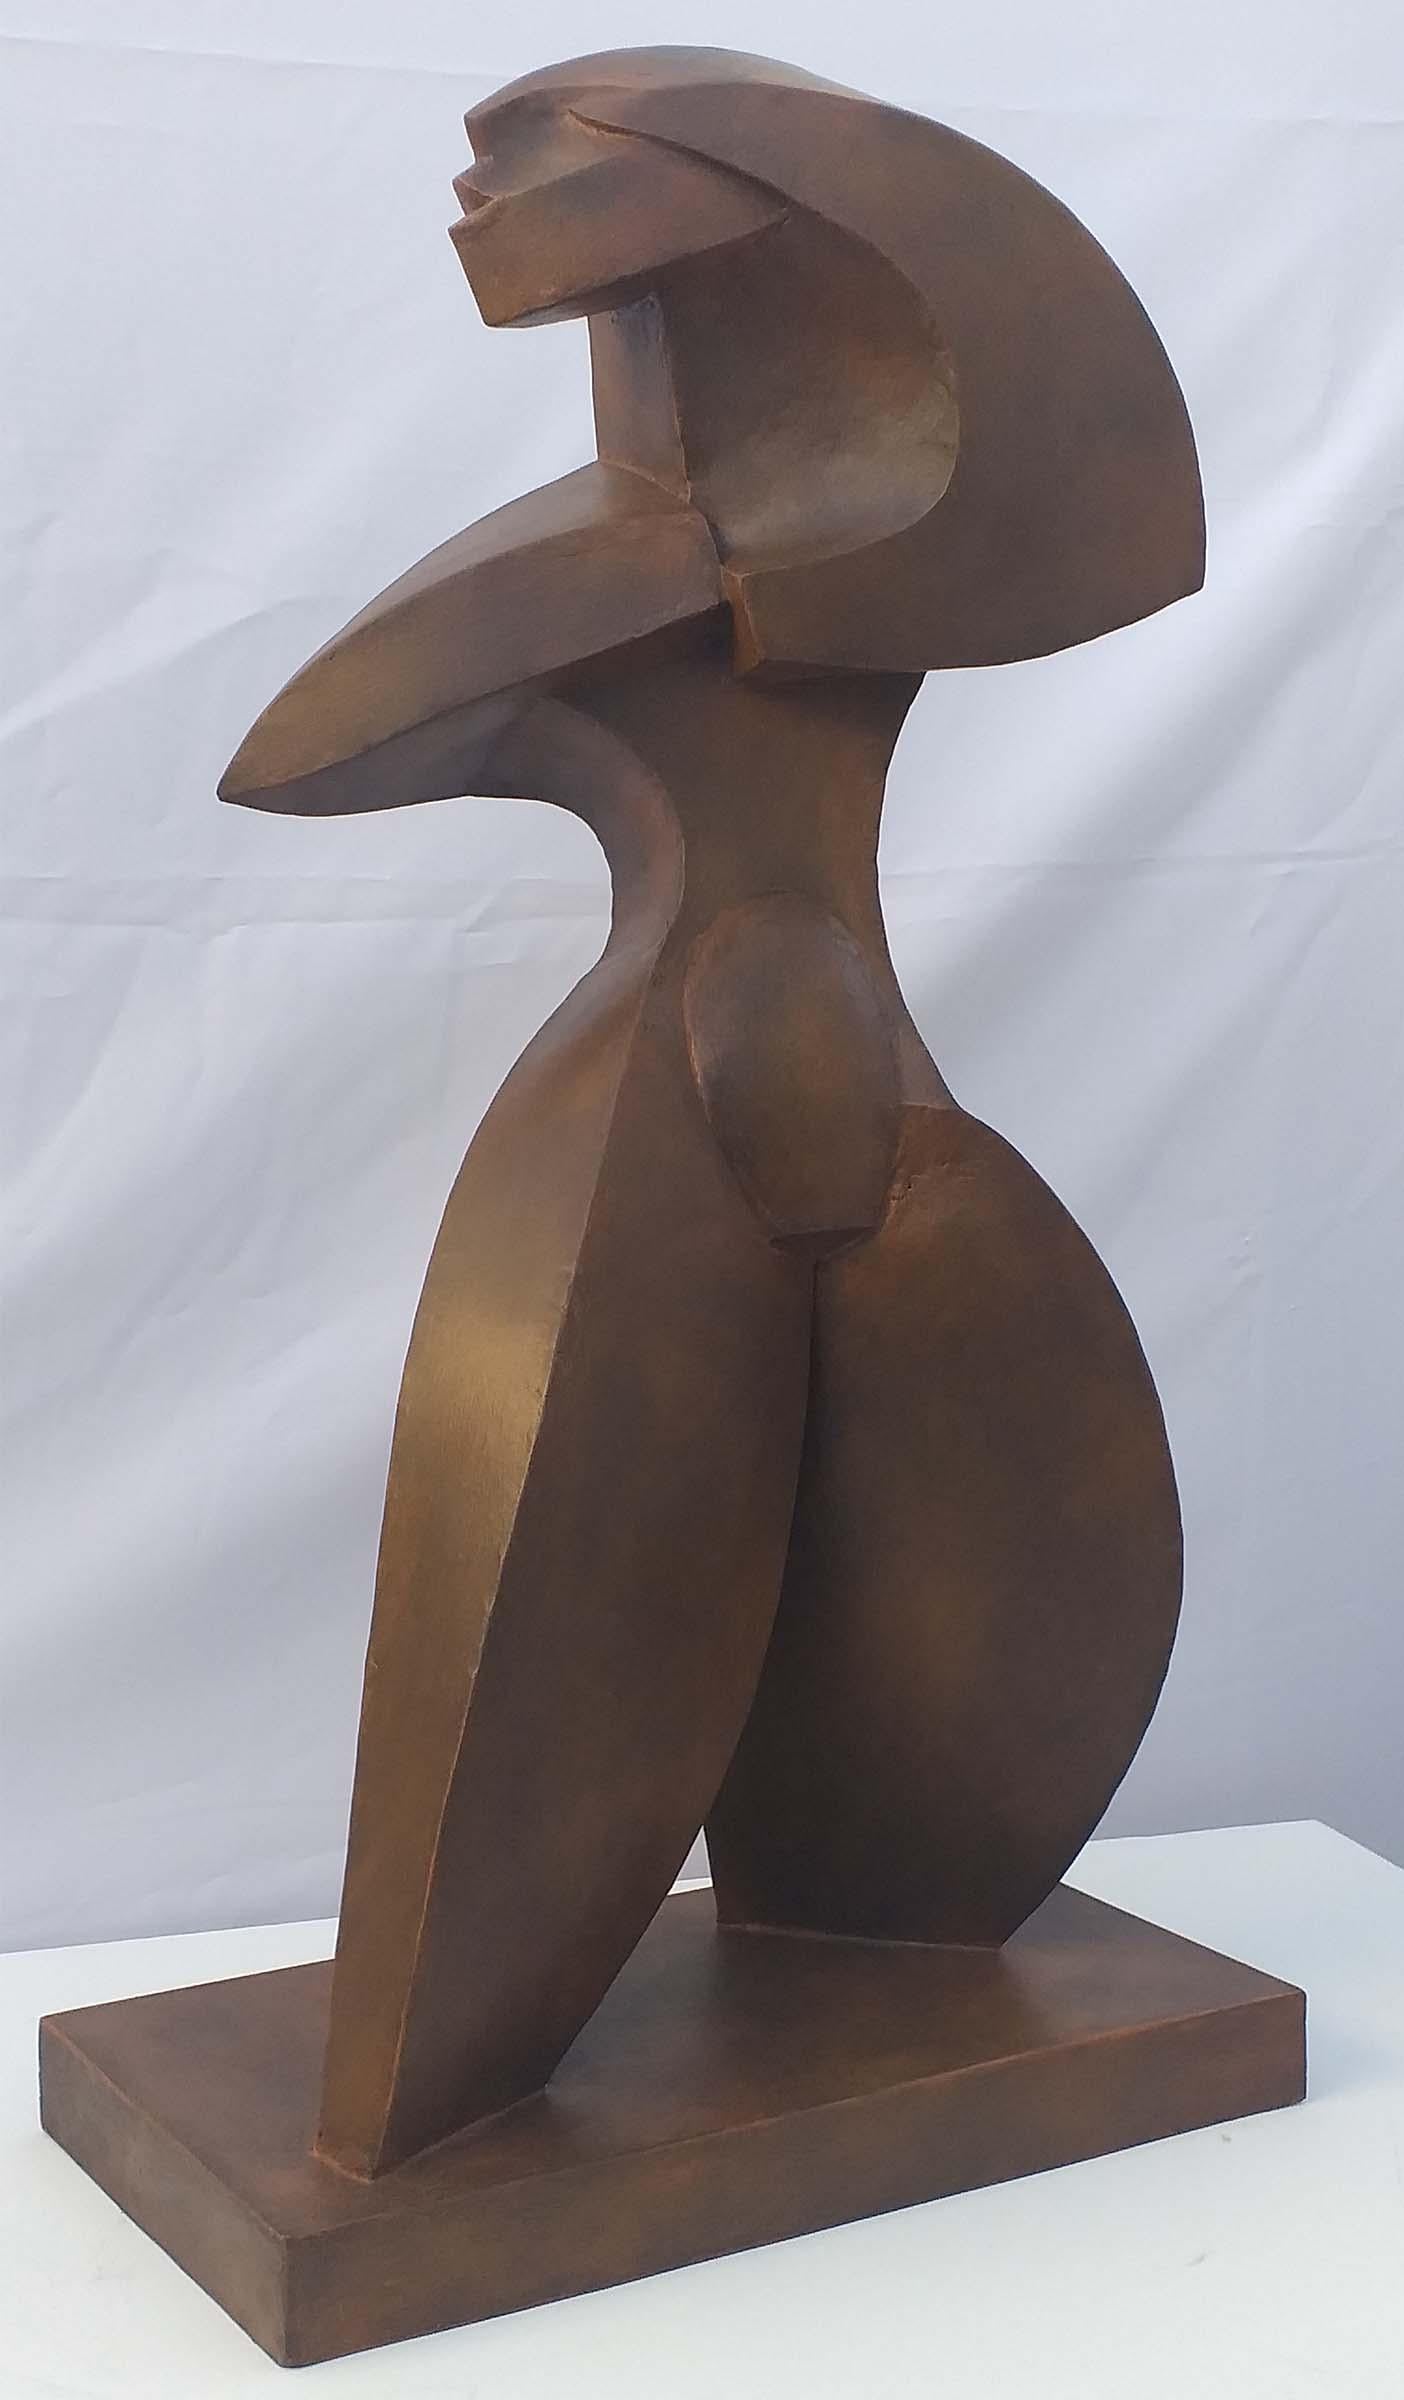 Ulises Jimenez Obregon Figurative Sculpture - Bailarina